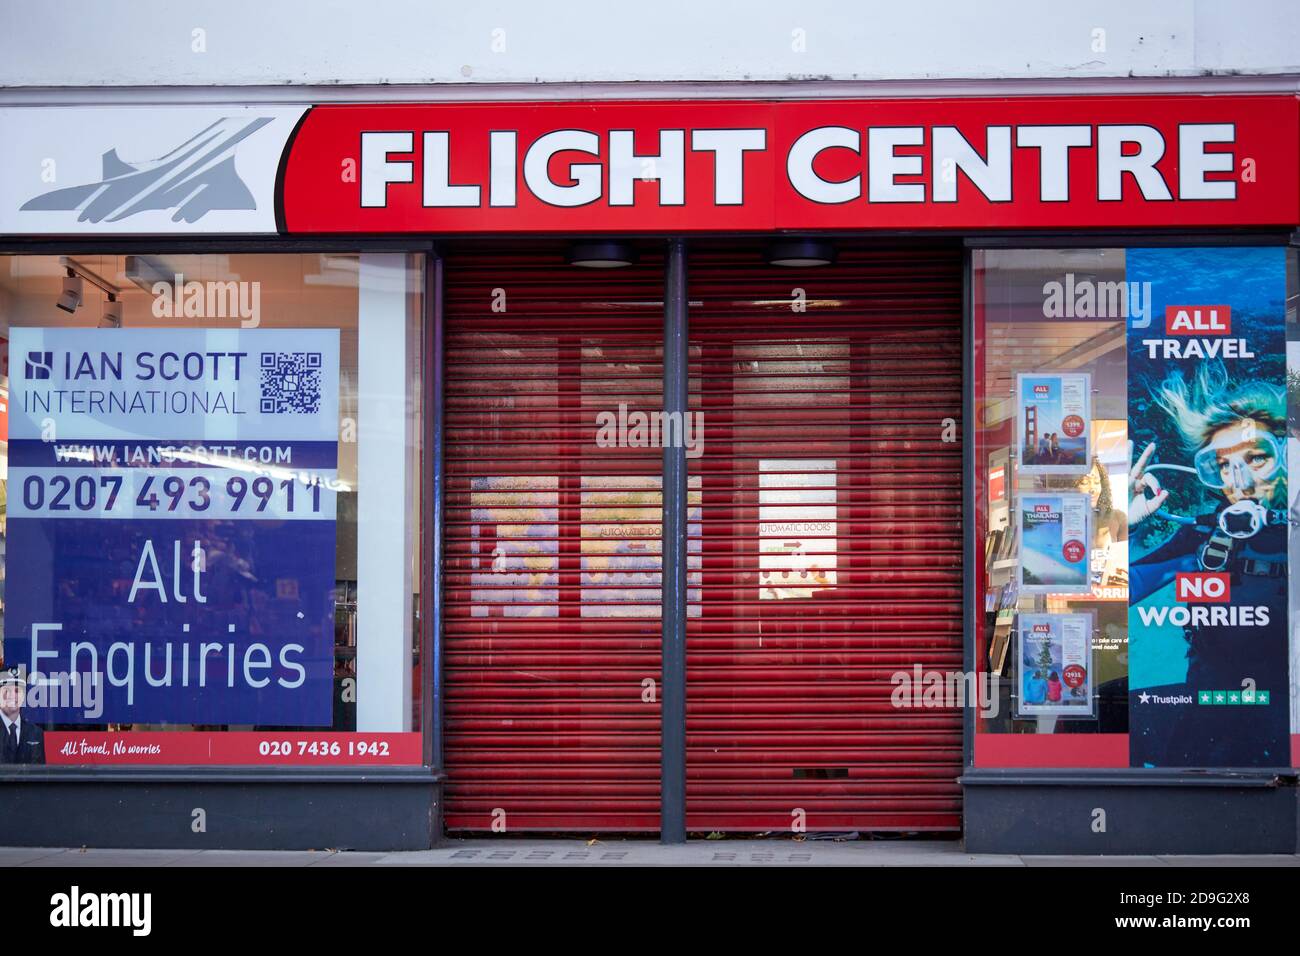 Londra, Regno Unito. - 4 Nov 2020: Un negozio Shuttered Flight Center su Oxford Street e l'annuncio per un nuovo inquilino. Dall'inizio della pandemia del coronavirus la compagnia di viaggi ha chiuso oltre 400 negozi in tutto il mondo. Foto Stock